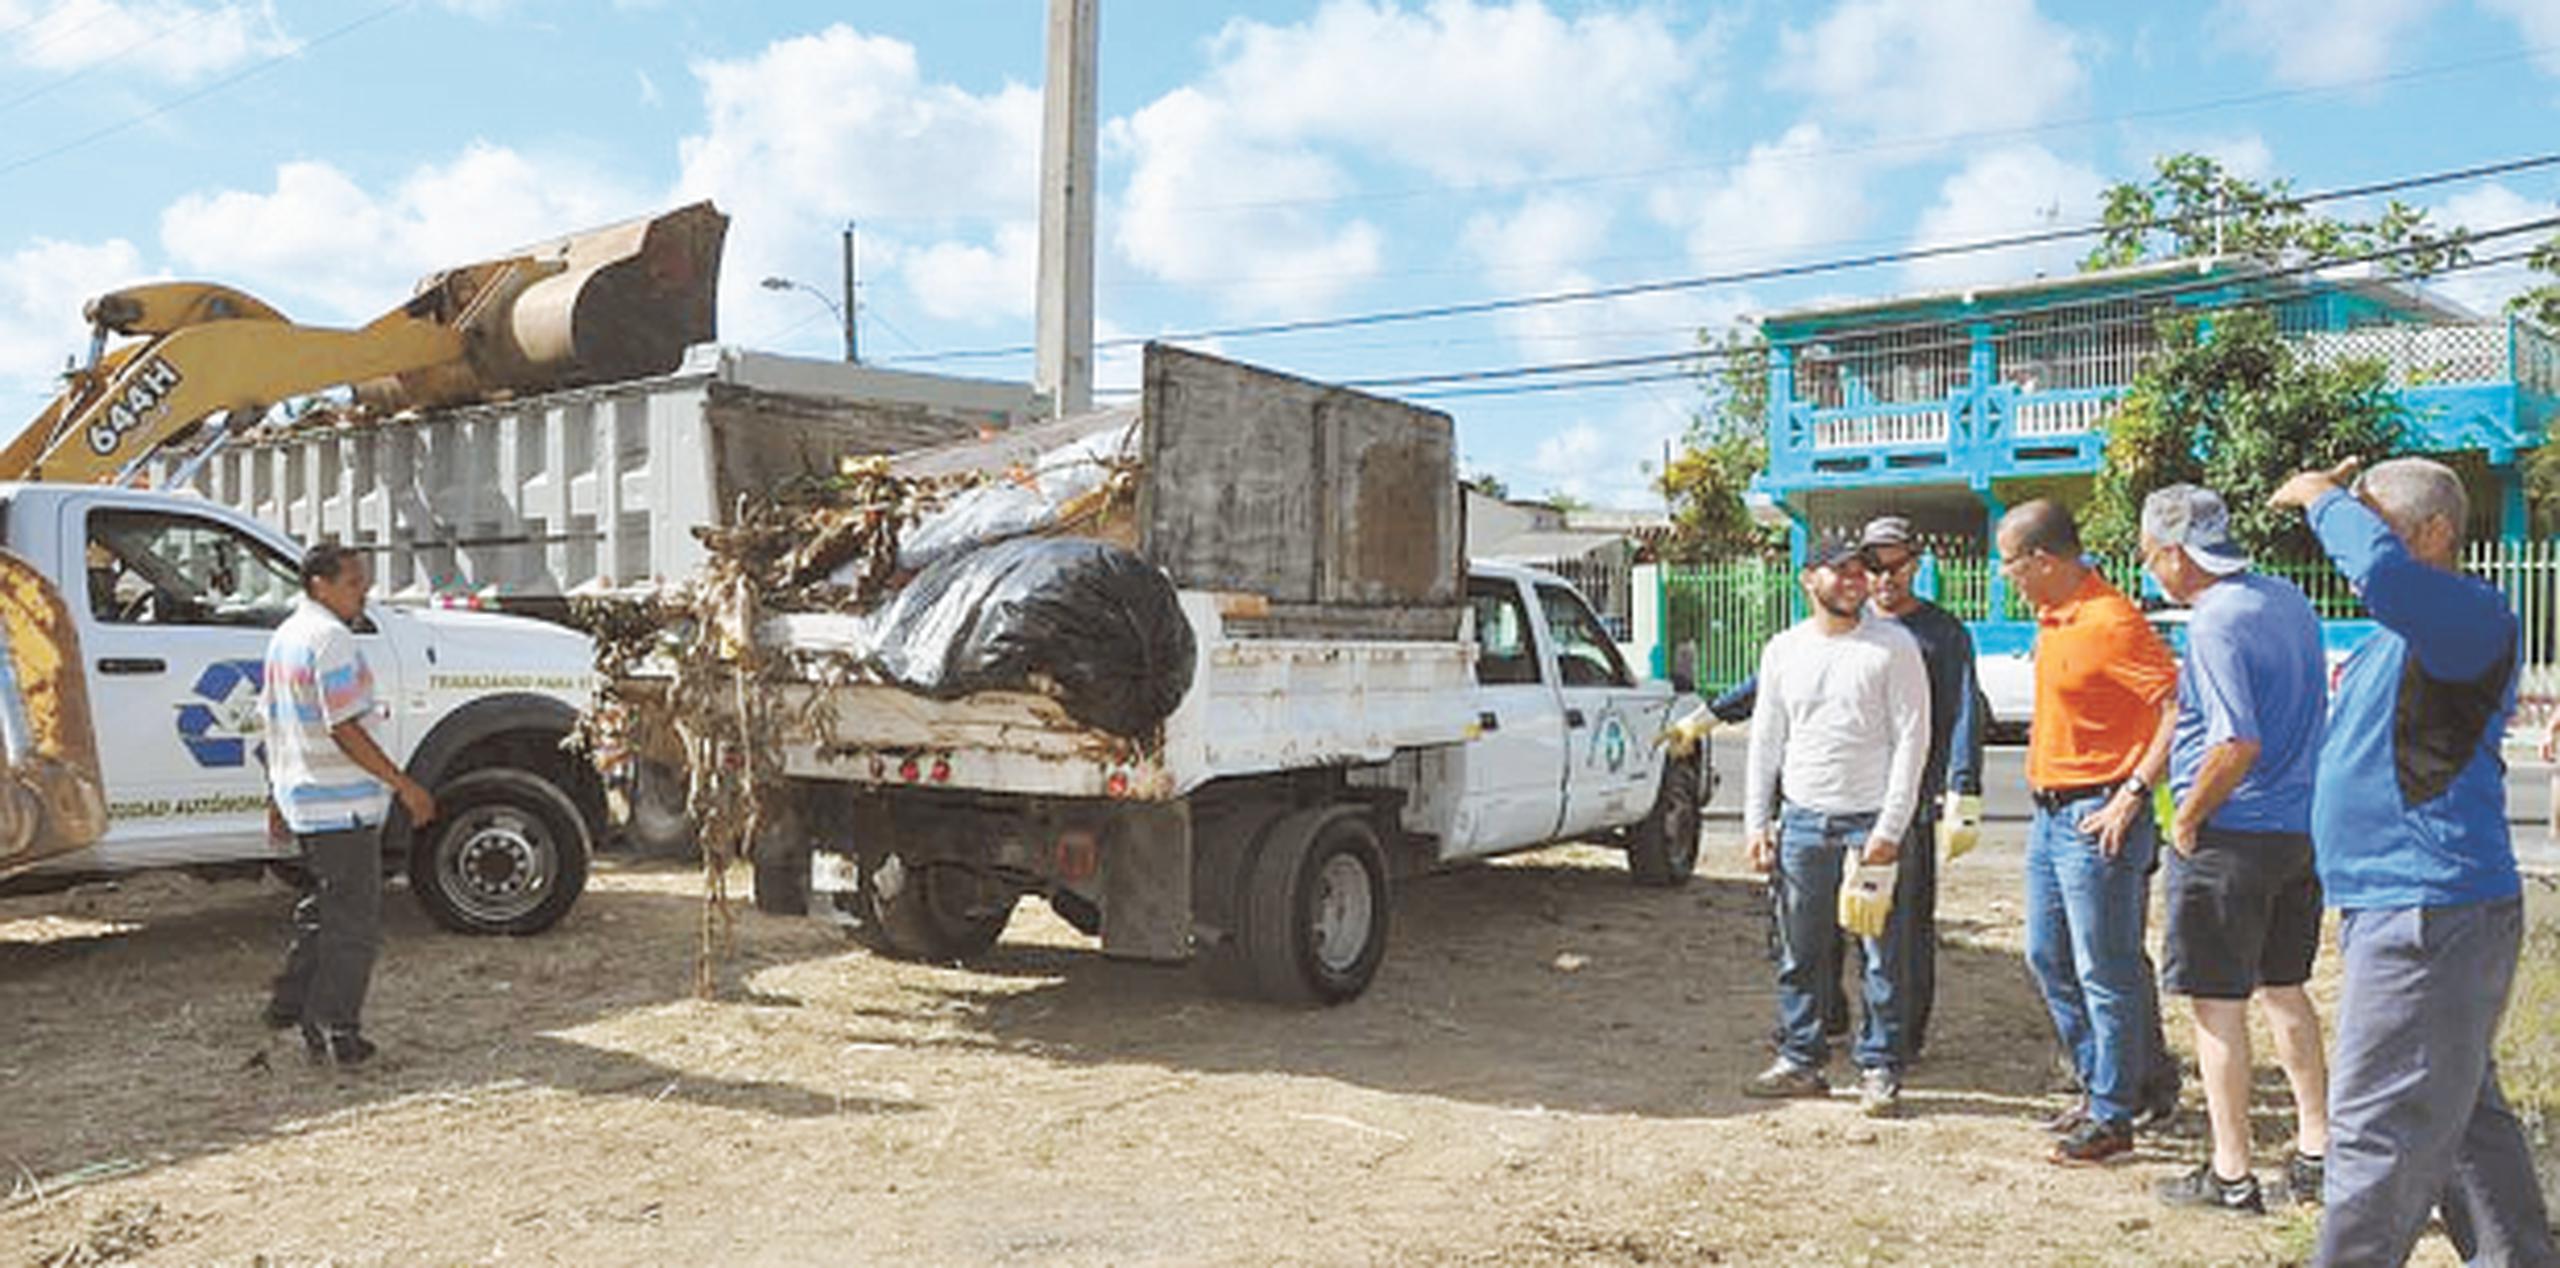 Los impactos de limpieza ya se han efectuado en barrios como Pájaros, el Casco Urbano, San José, Villa Olga e Ingenio, entre otros. (SUMINISTRADA)